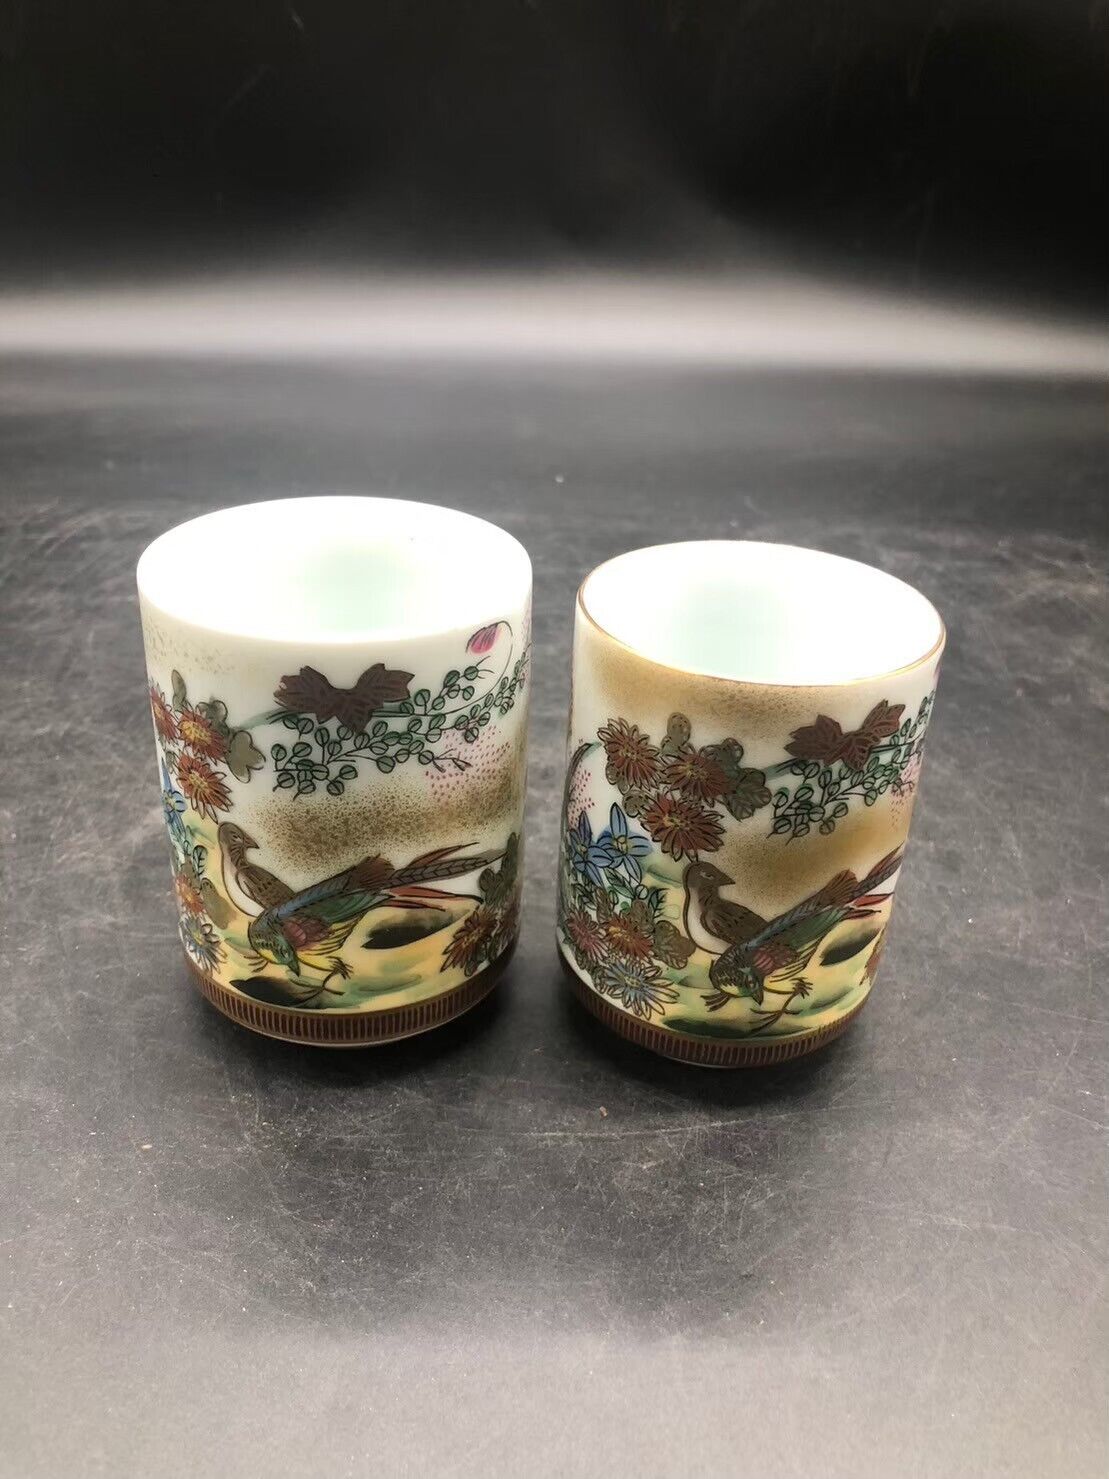 Kutani ware teacup pair vintage hand-painted